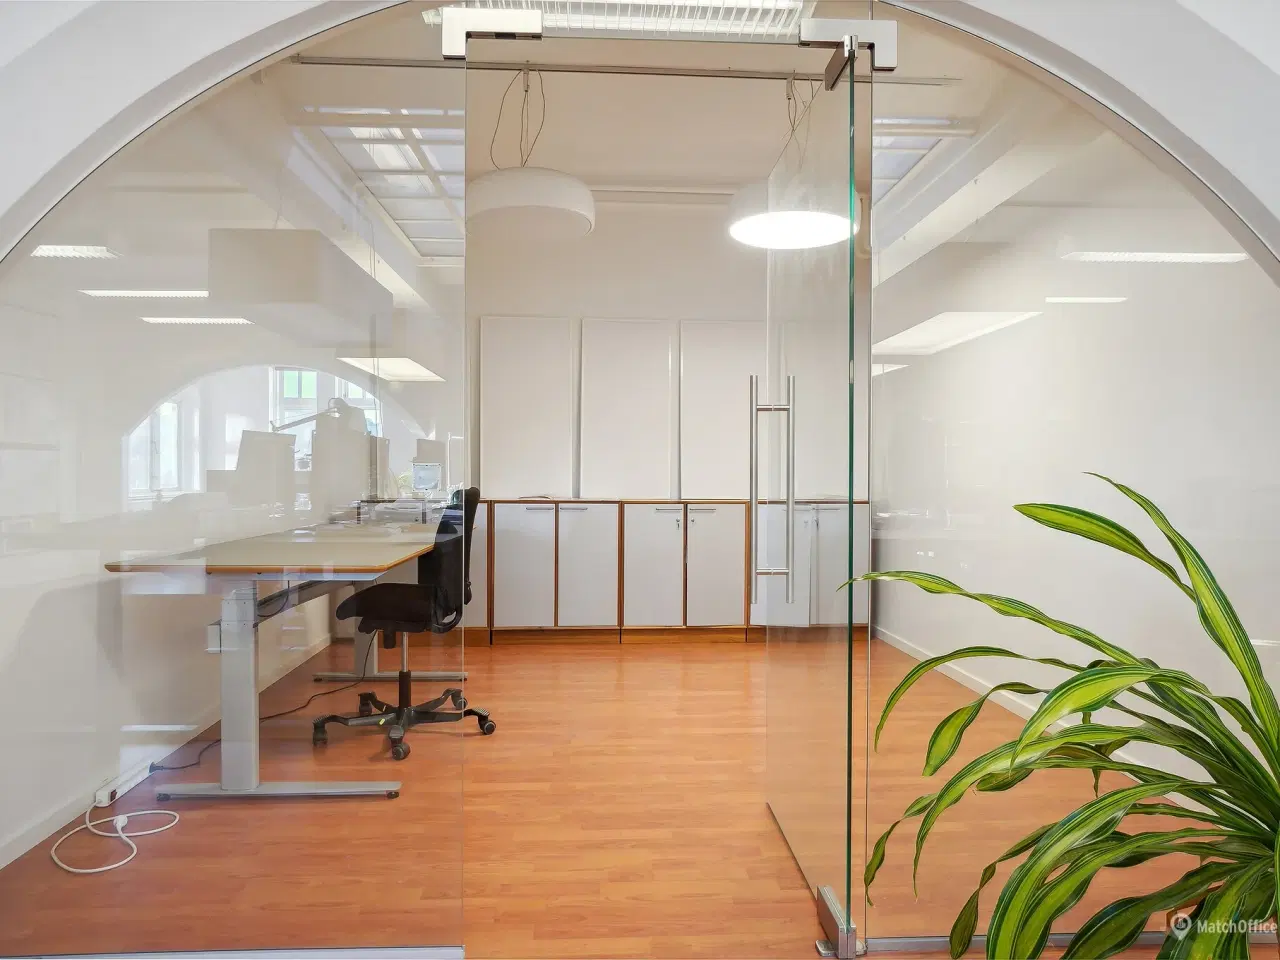 Billede 2 - 339 m² storrumskontor med flere kontorer og mødelokaler udlejes i Kongensgade i Odense City